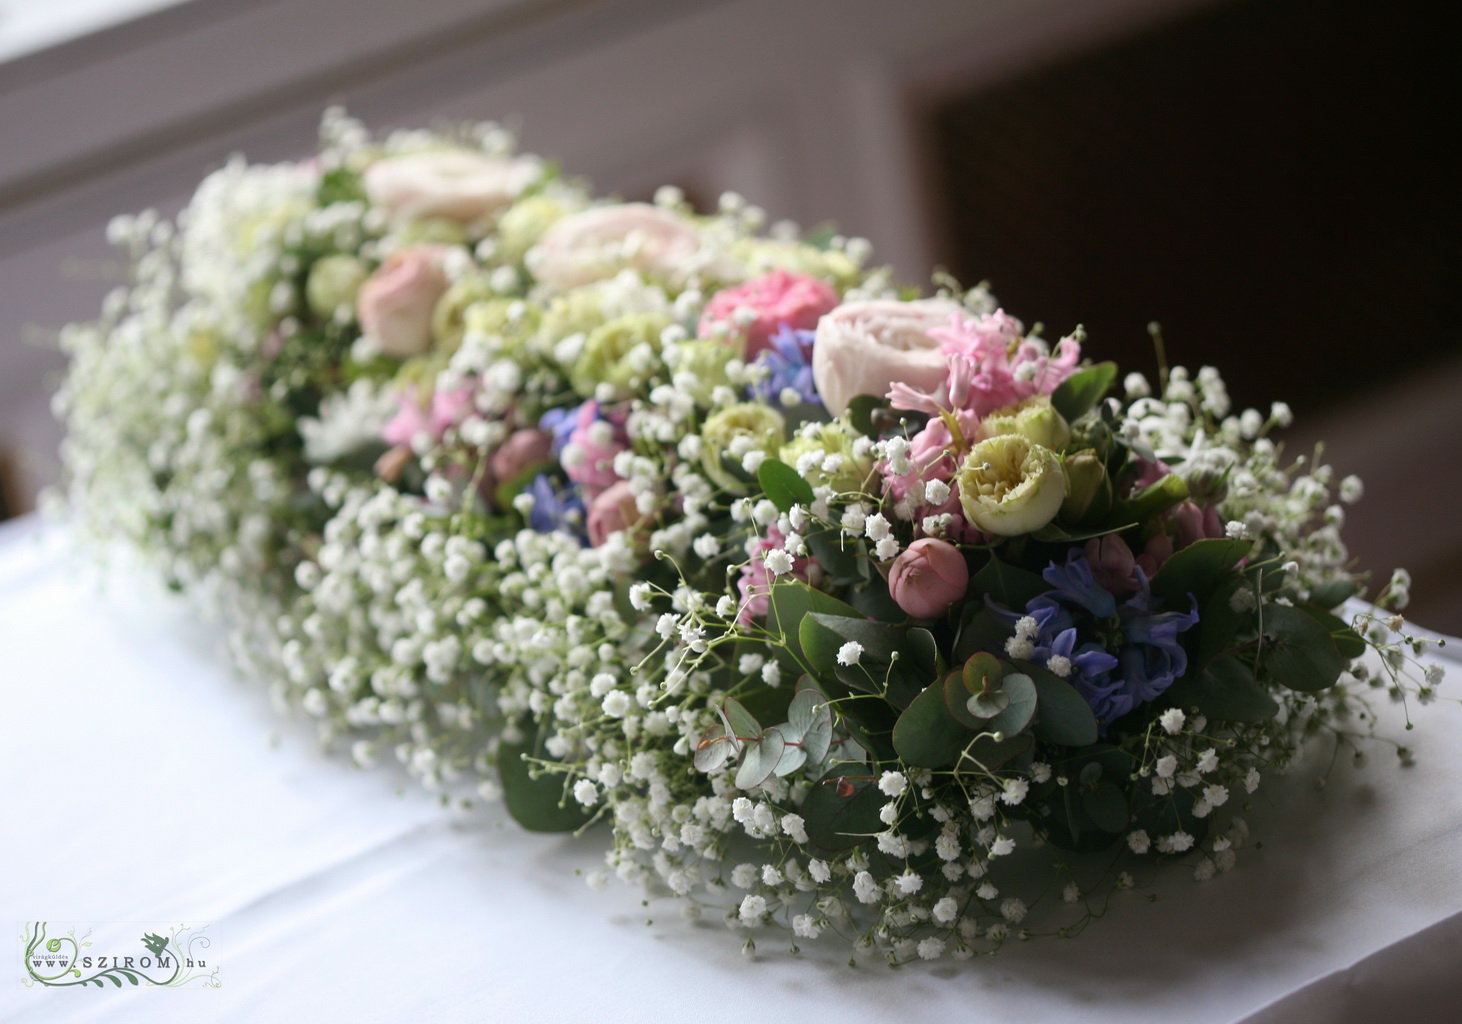 Virágküldés Budapest - Főasztaldísz pasztell virágokkal, rezgővel, Gundel (fehér, kék, rózsaszín, rózsa, angol rózsa, boglárka, jácint, rezgő), esküvő